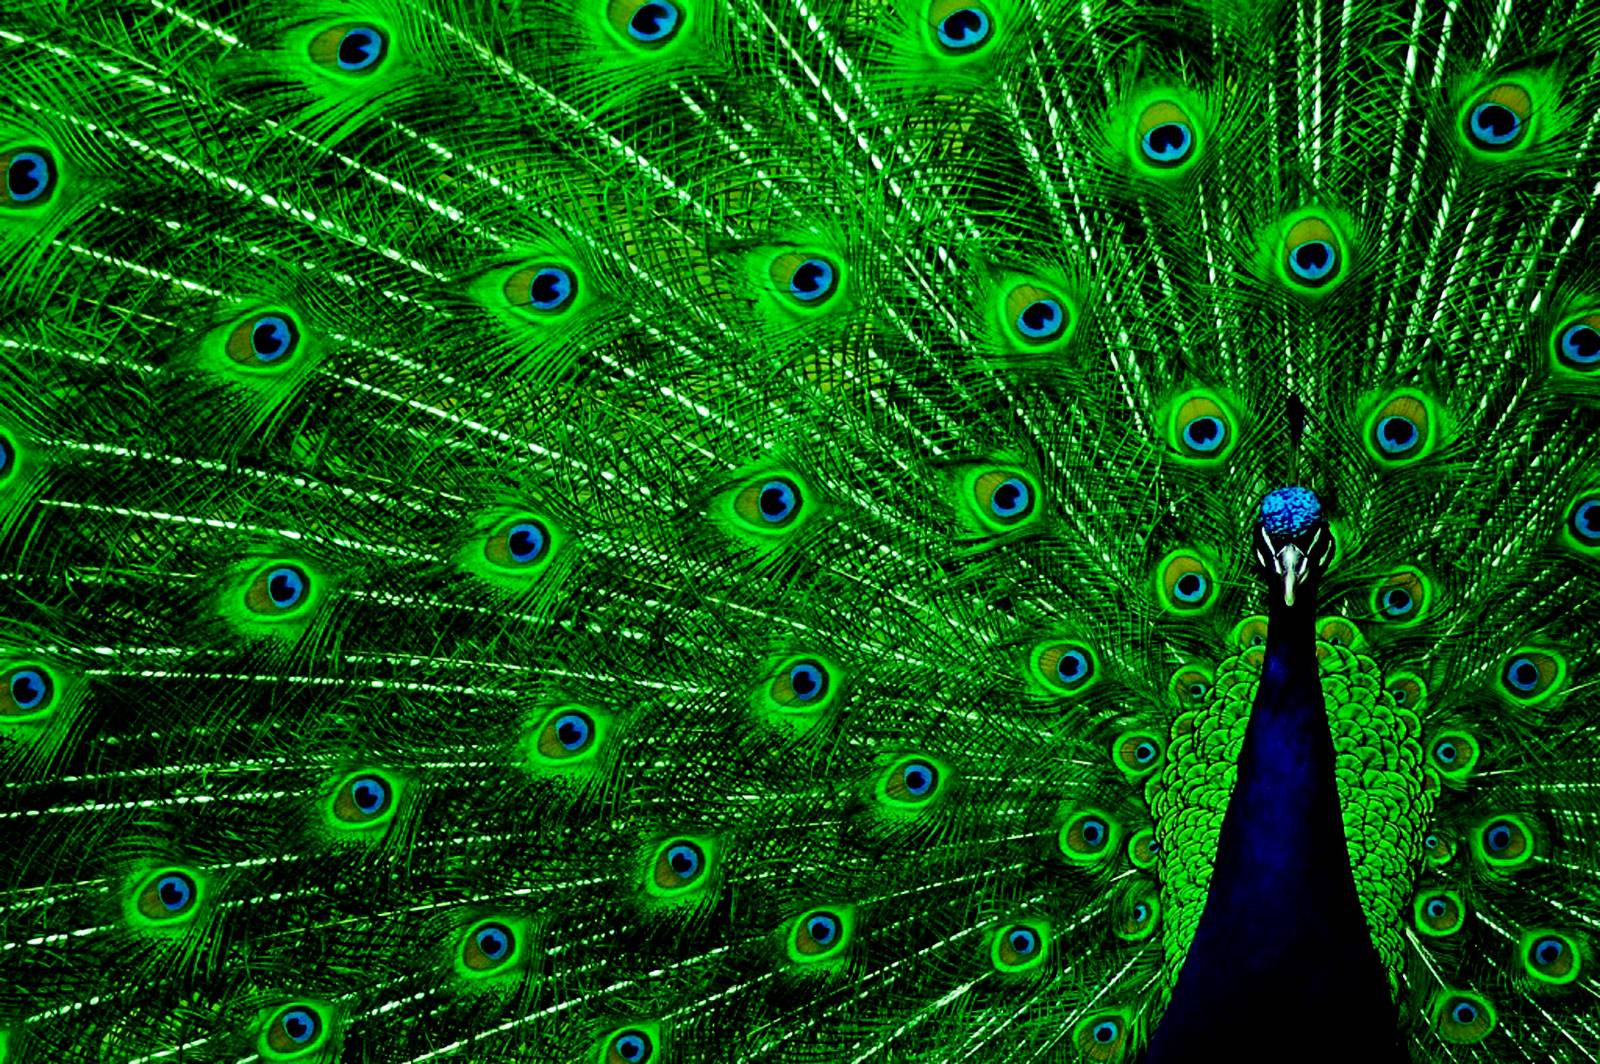 Peacock Background. wollpopor